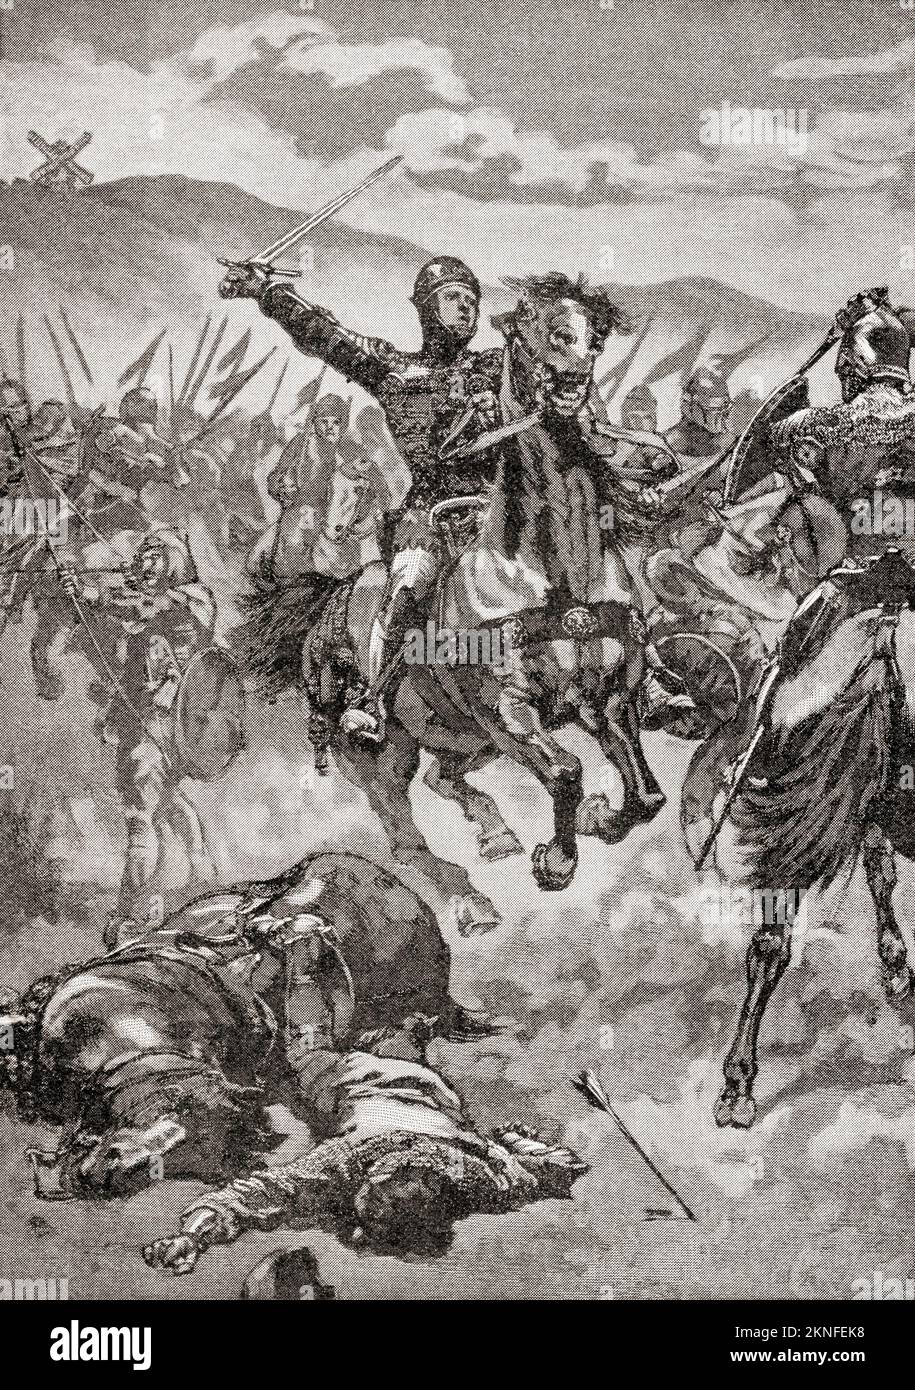 Le Prince Noir à la bataille de Crécy, le 26 août 1346. Edward de Woodstock, alias The Black Prince, 1330 – 1376. Fils aîné du roi Edward III d'Angleterre. De l'Histoire de l'Angleterre, publié en 1907 Banque D'Images